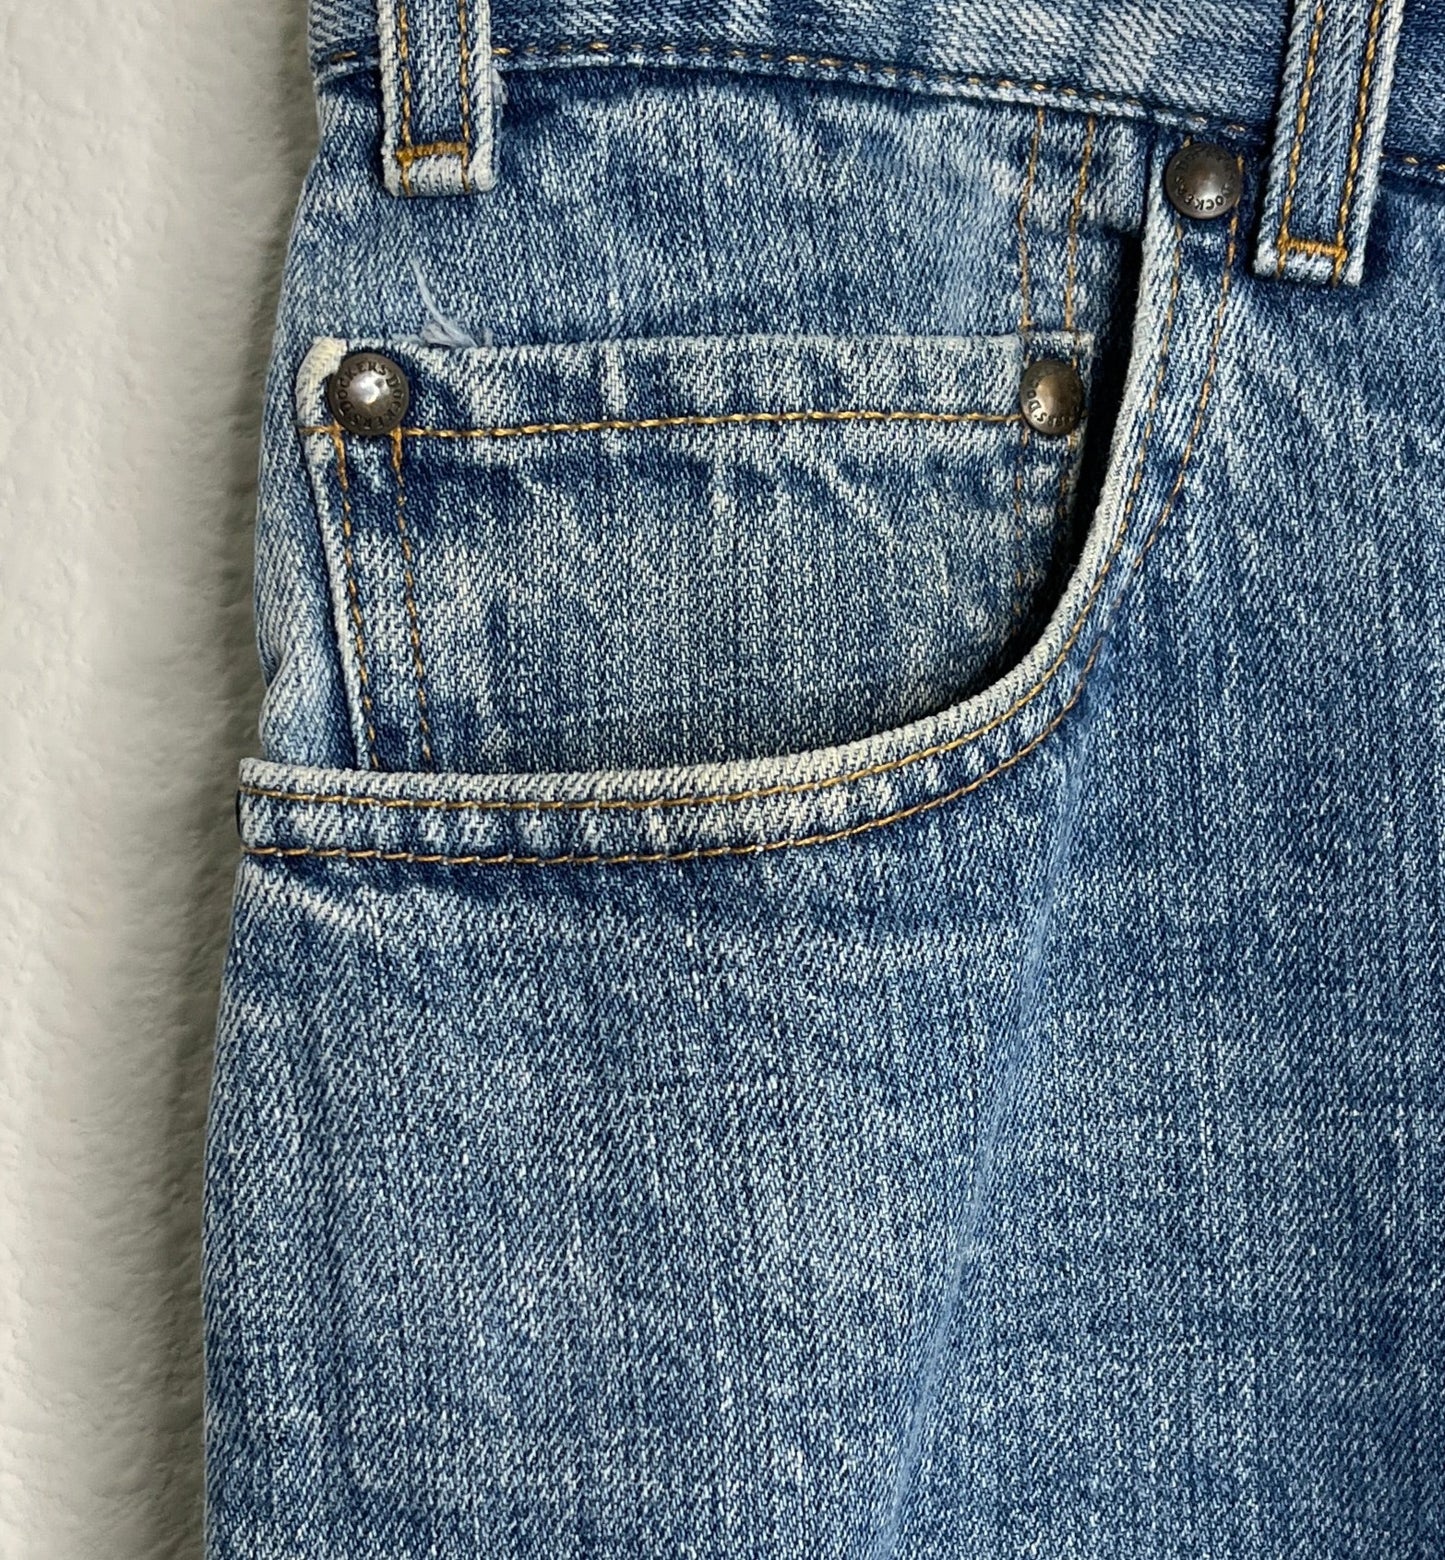 Dockers MEN'S Denim Blue Jeans Size 40x32 SKU 000446